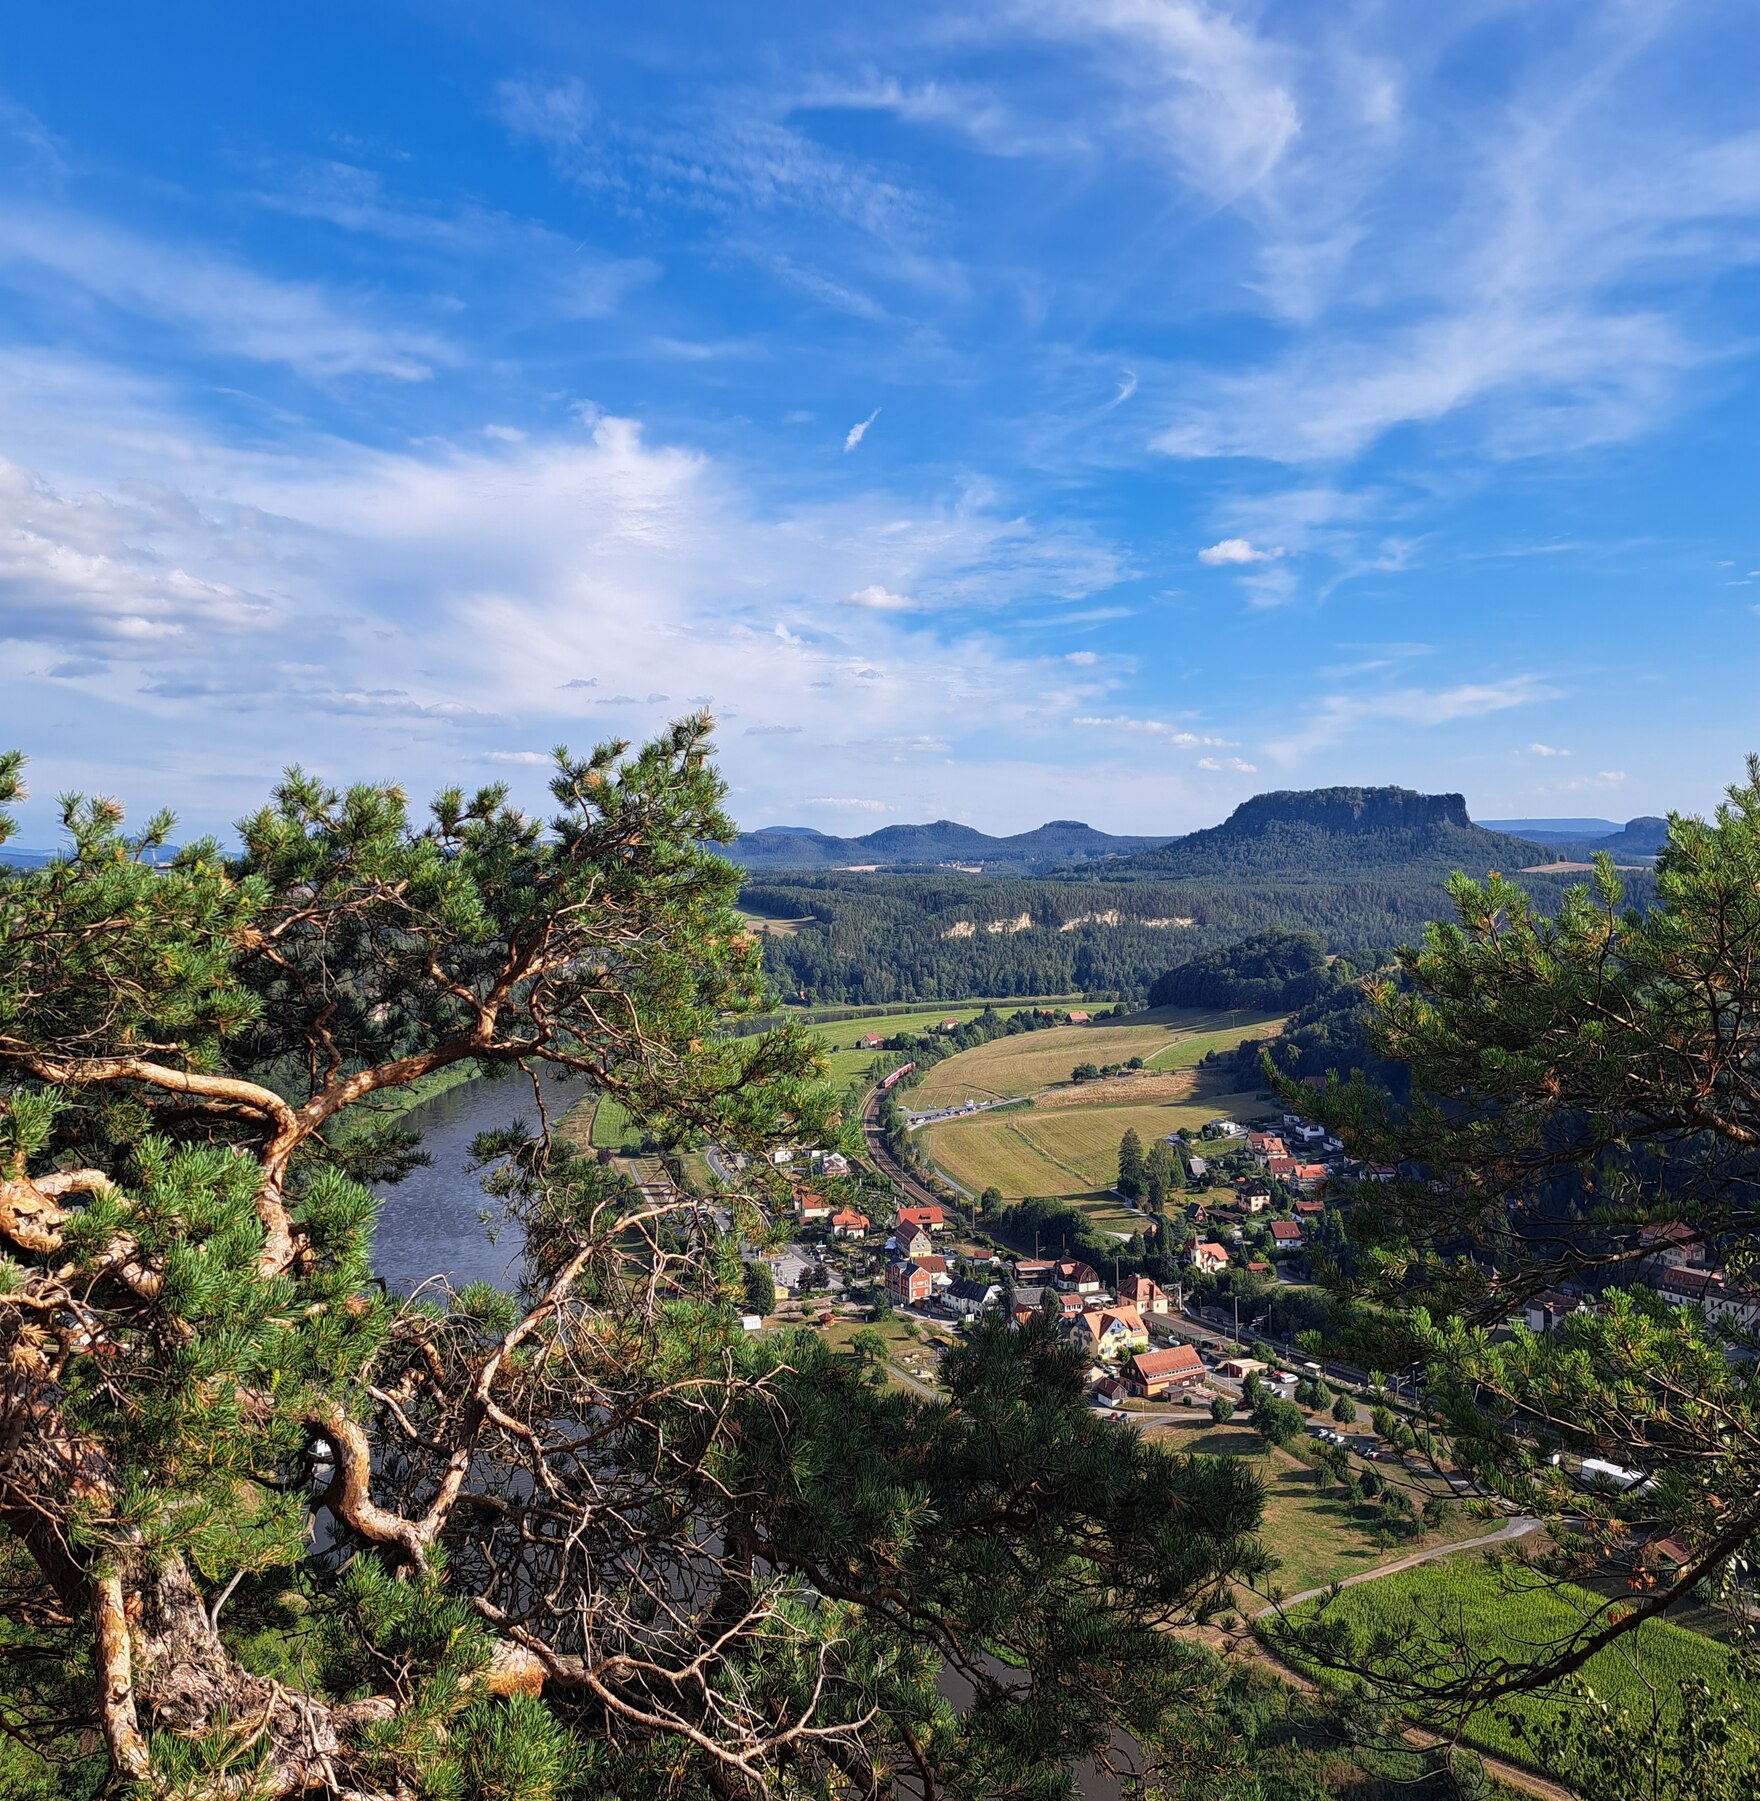 Blick vom Basteifelsen in das Elbtal flussaufwärts, blauer Himmel mit Schleierwolken, im Hintergrund Liliensteinfelsen